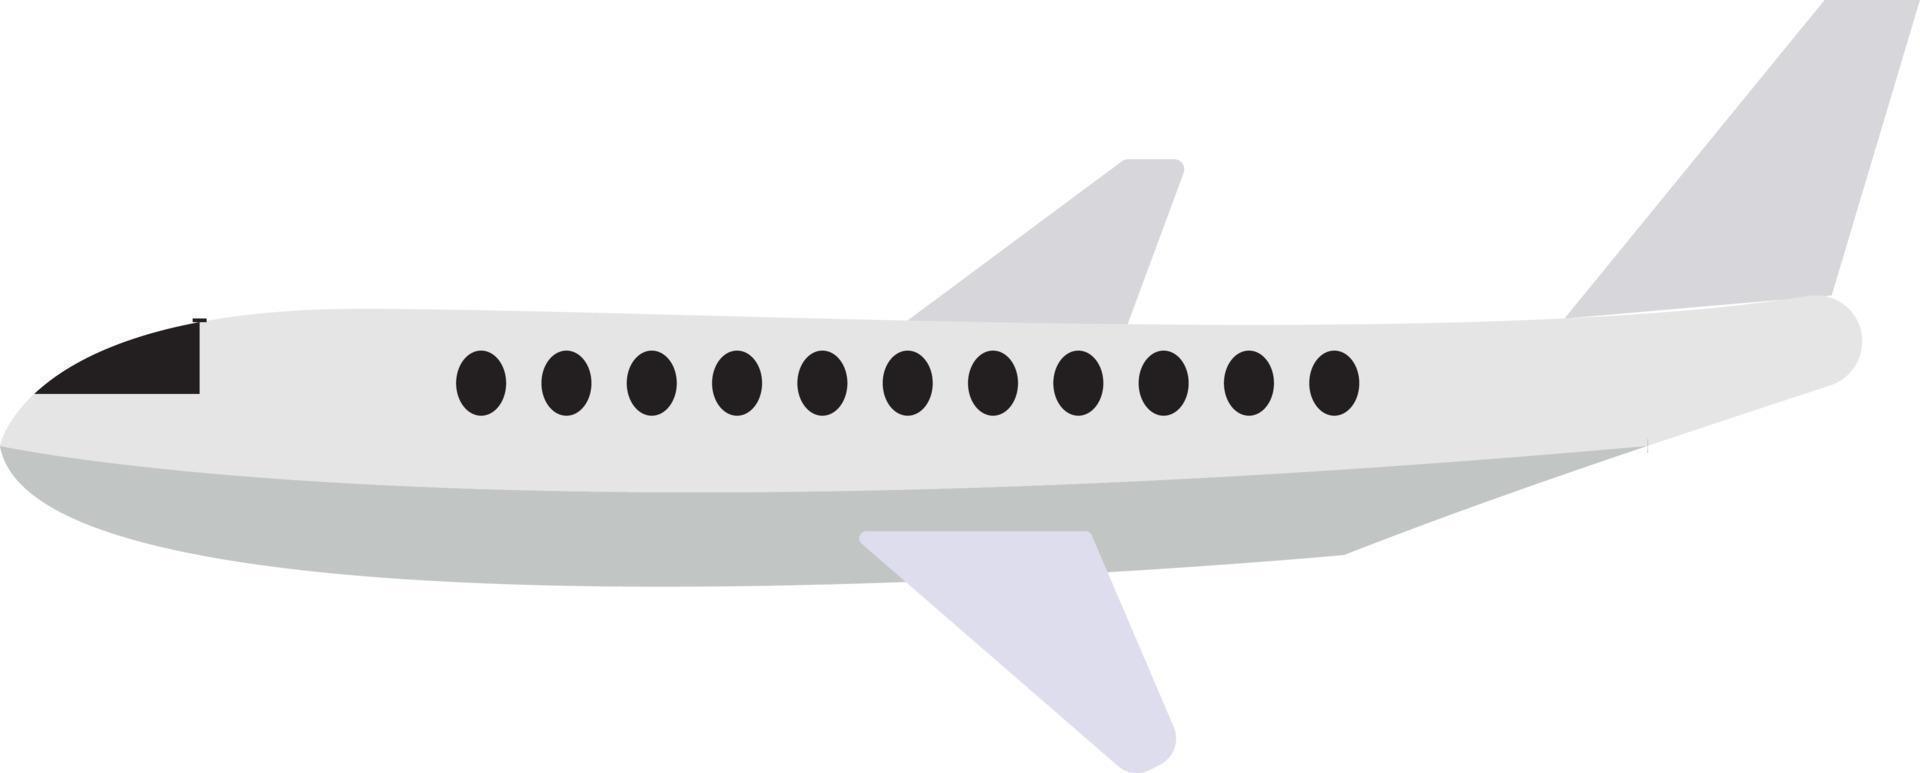 avião de ar branco, ilustração, vetor em fundo branco.